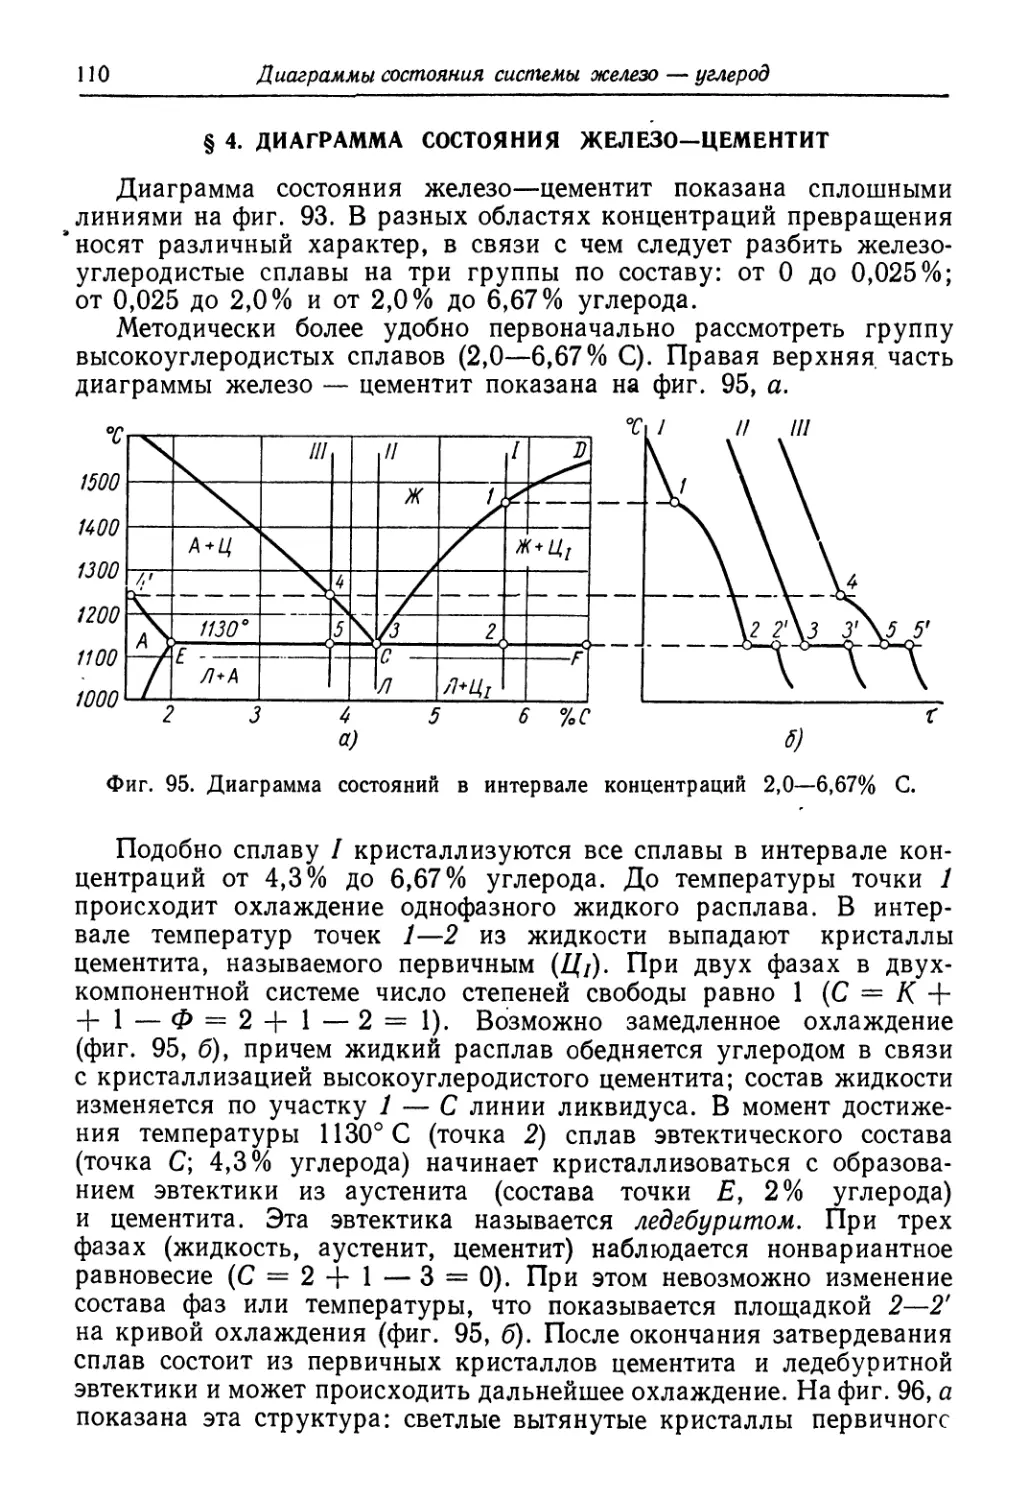 § 4. Диаграмма состояния железо-цементит